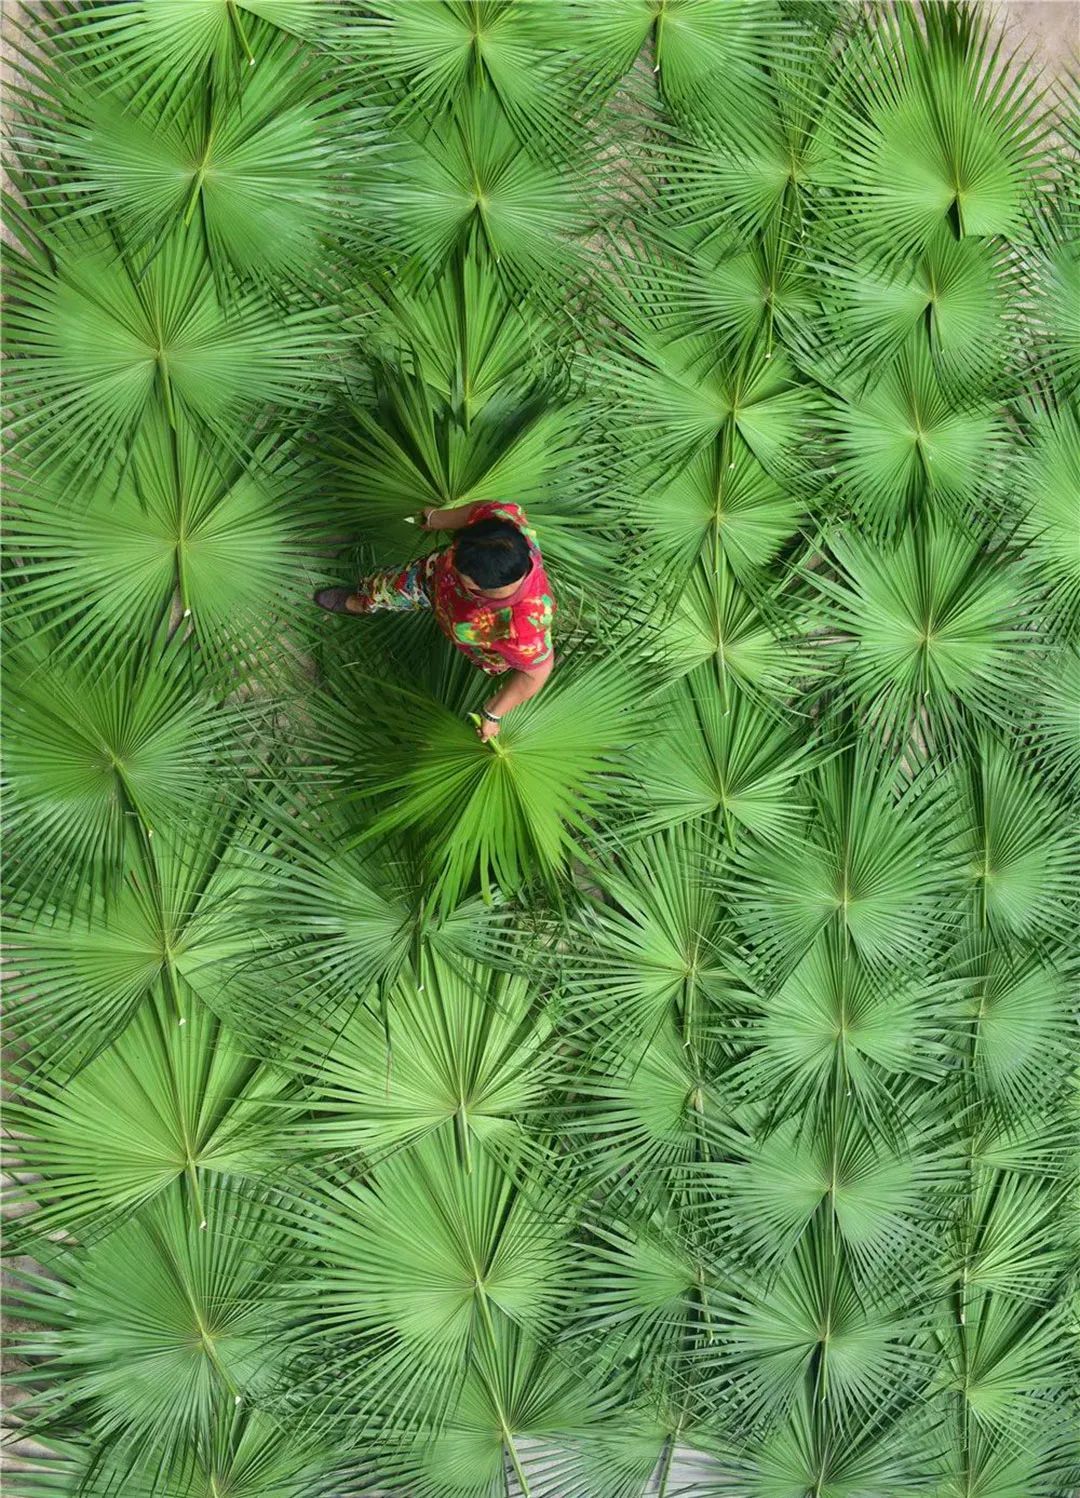 自然馈赠、绿色清凉的蒲葵叶 ©内江日报融媒体